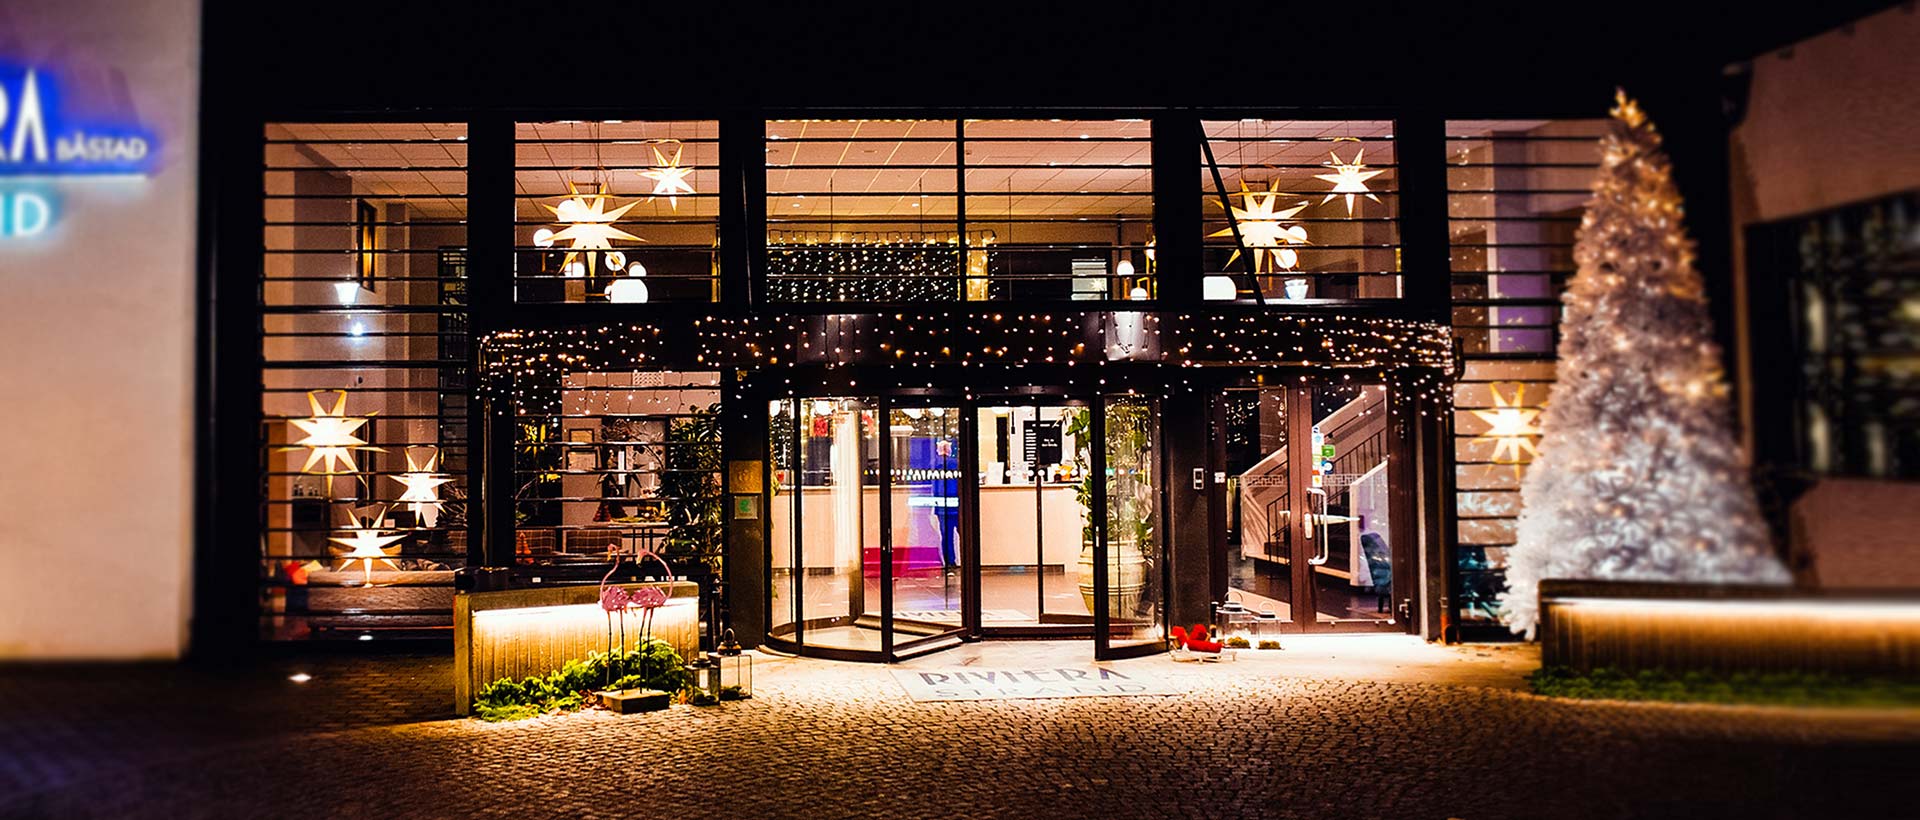 Julpyntad entré till Hotel Riviera Strand i Båstad